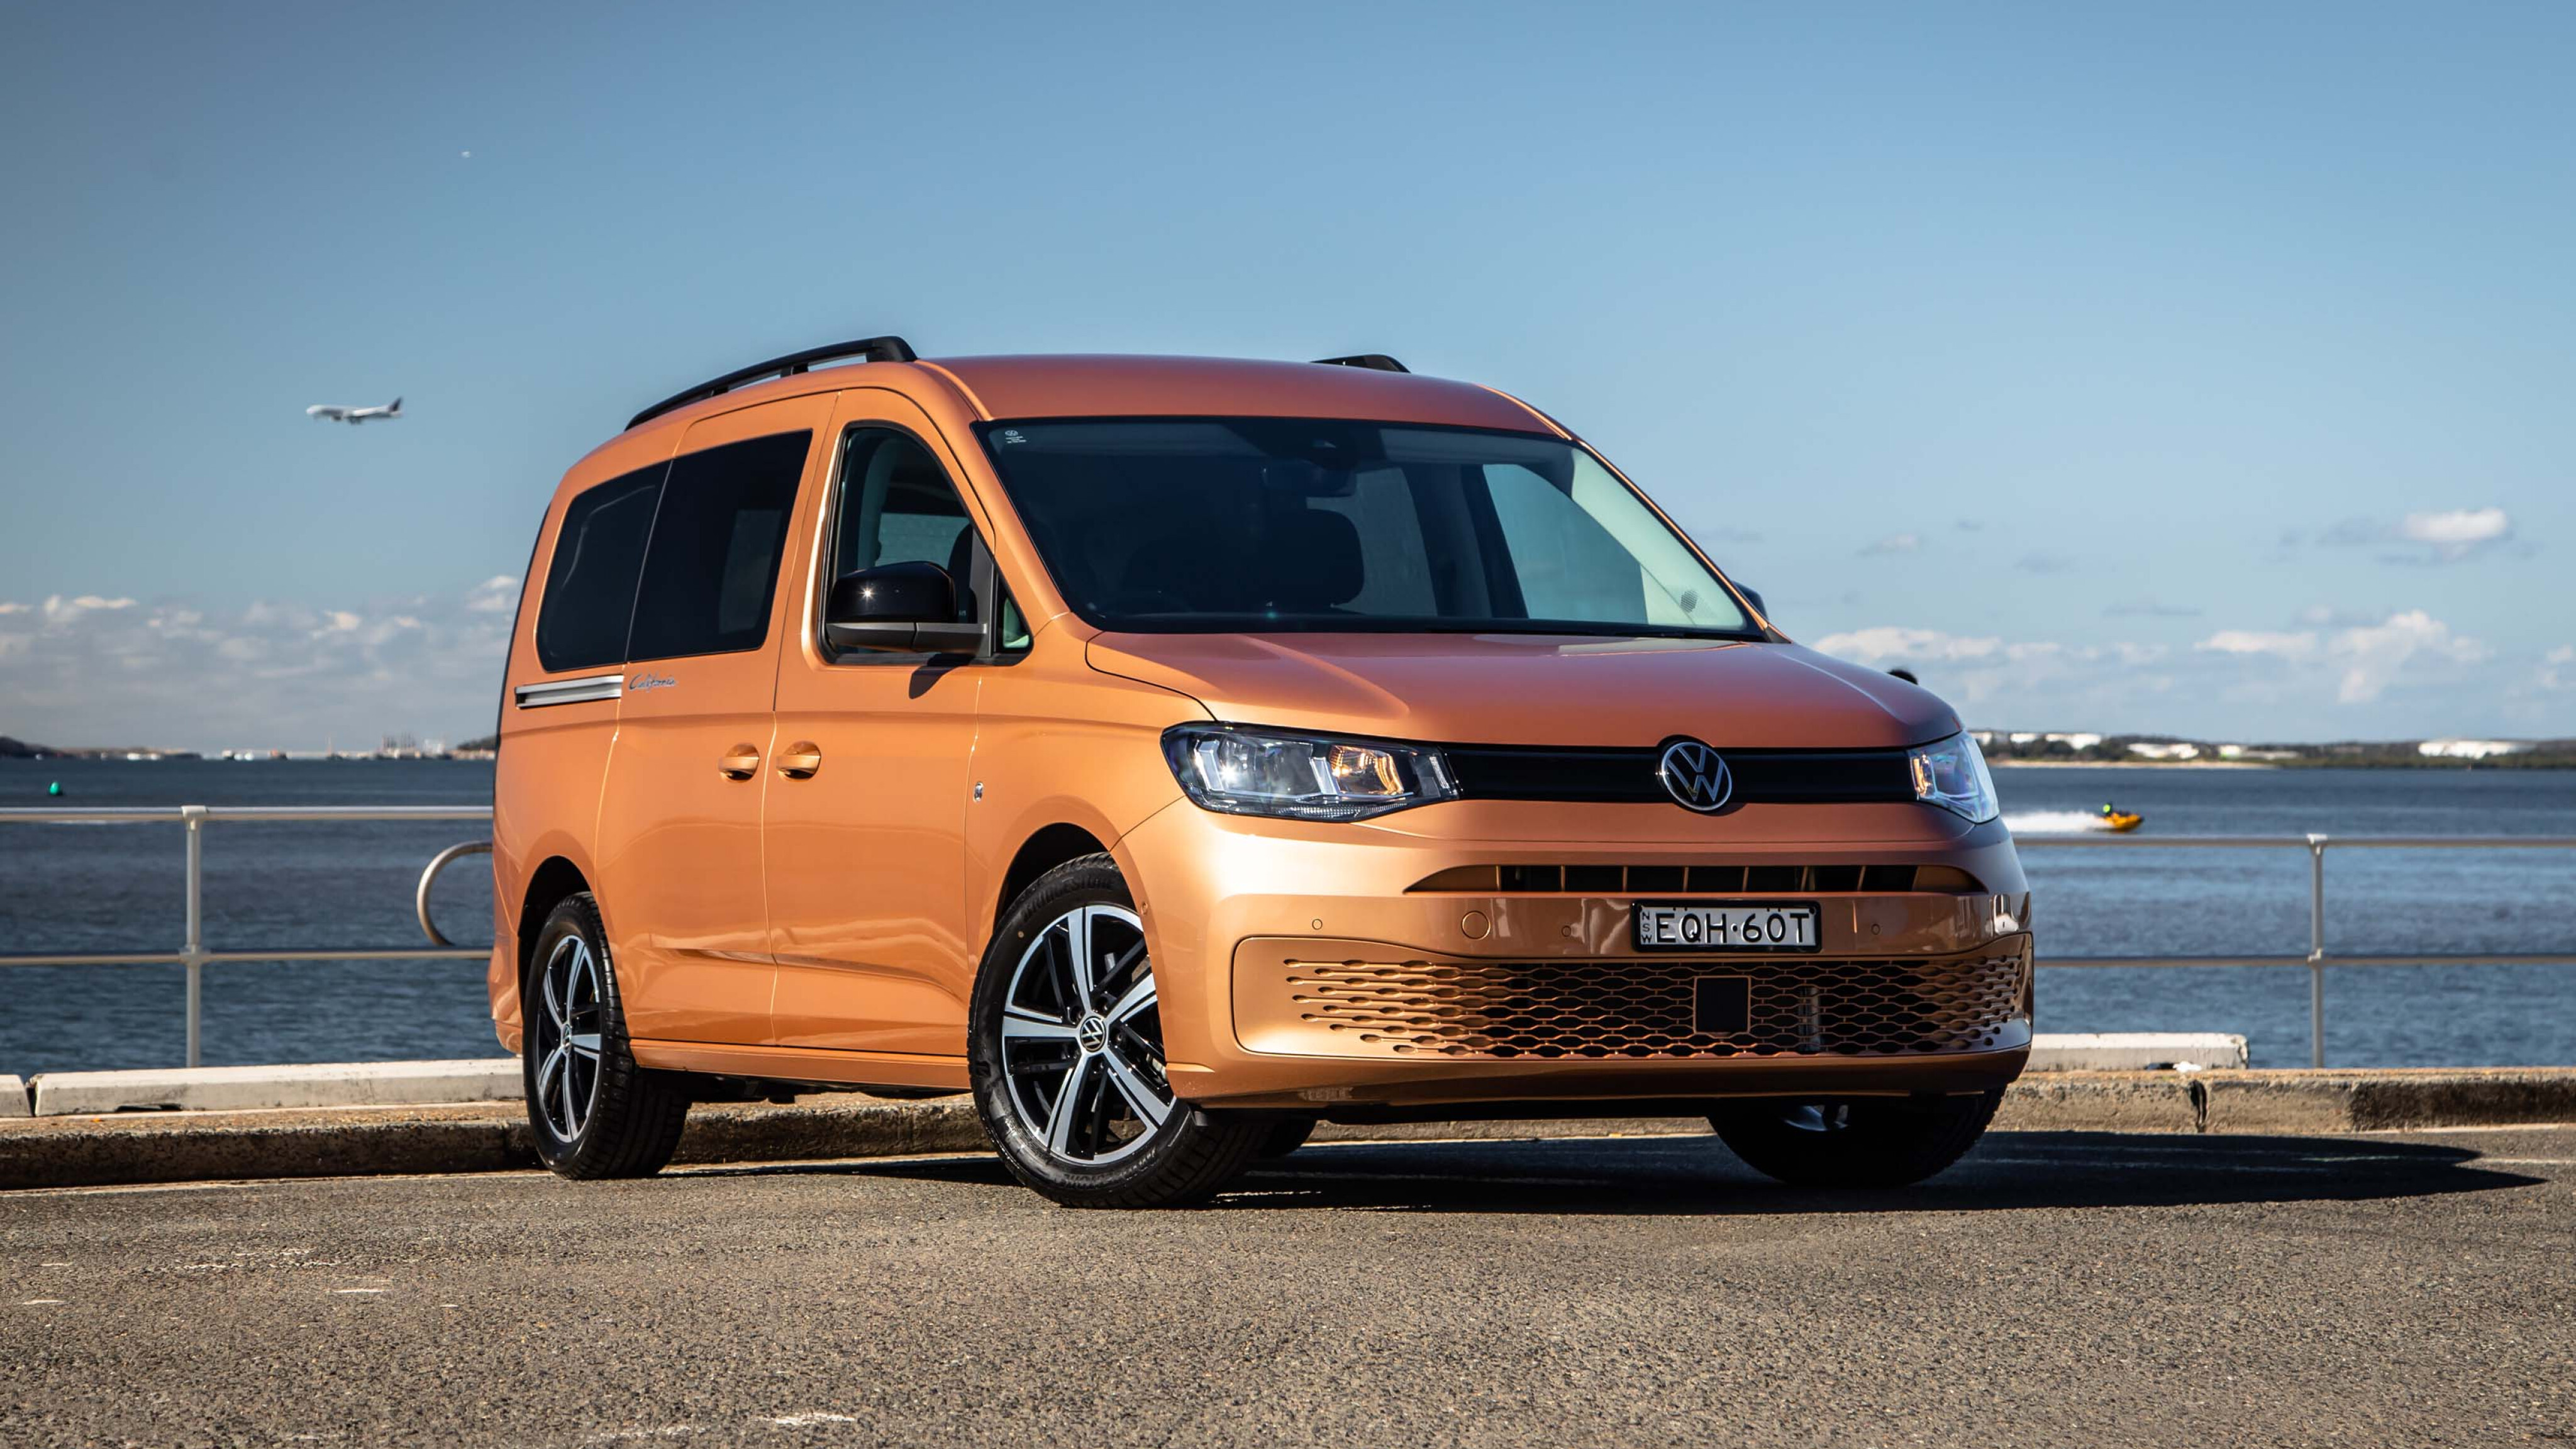 Volkswagen Caddy Cargo long-term review: final verdict